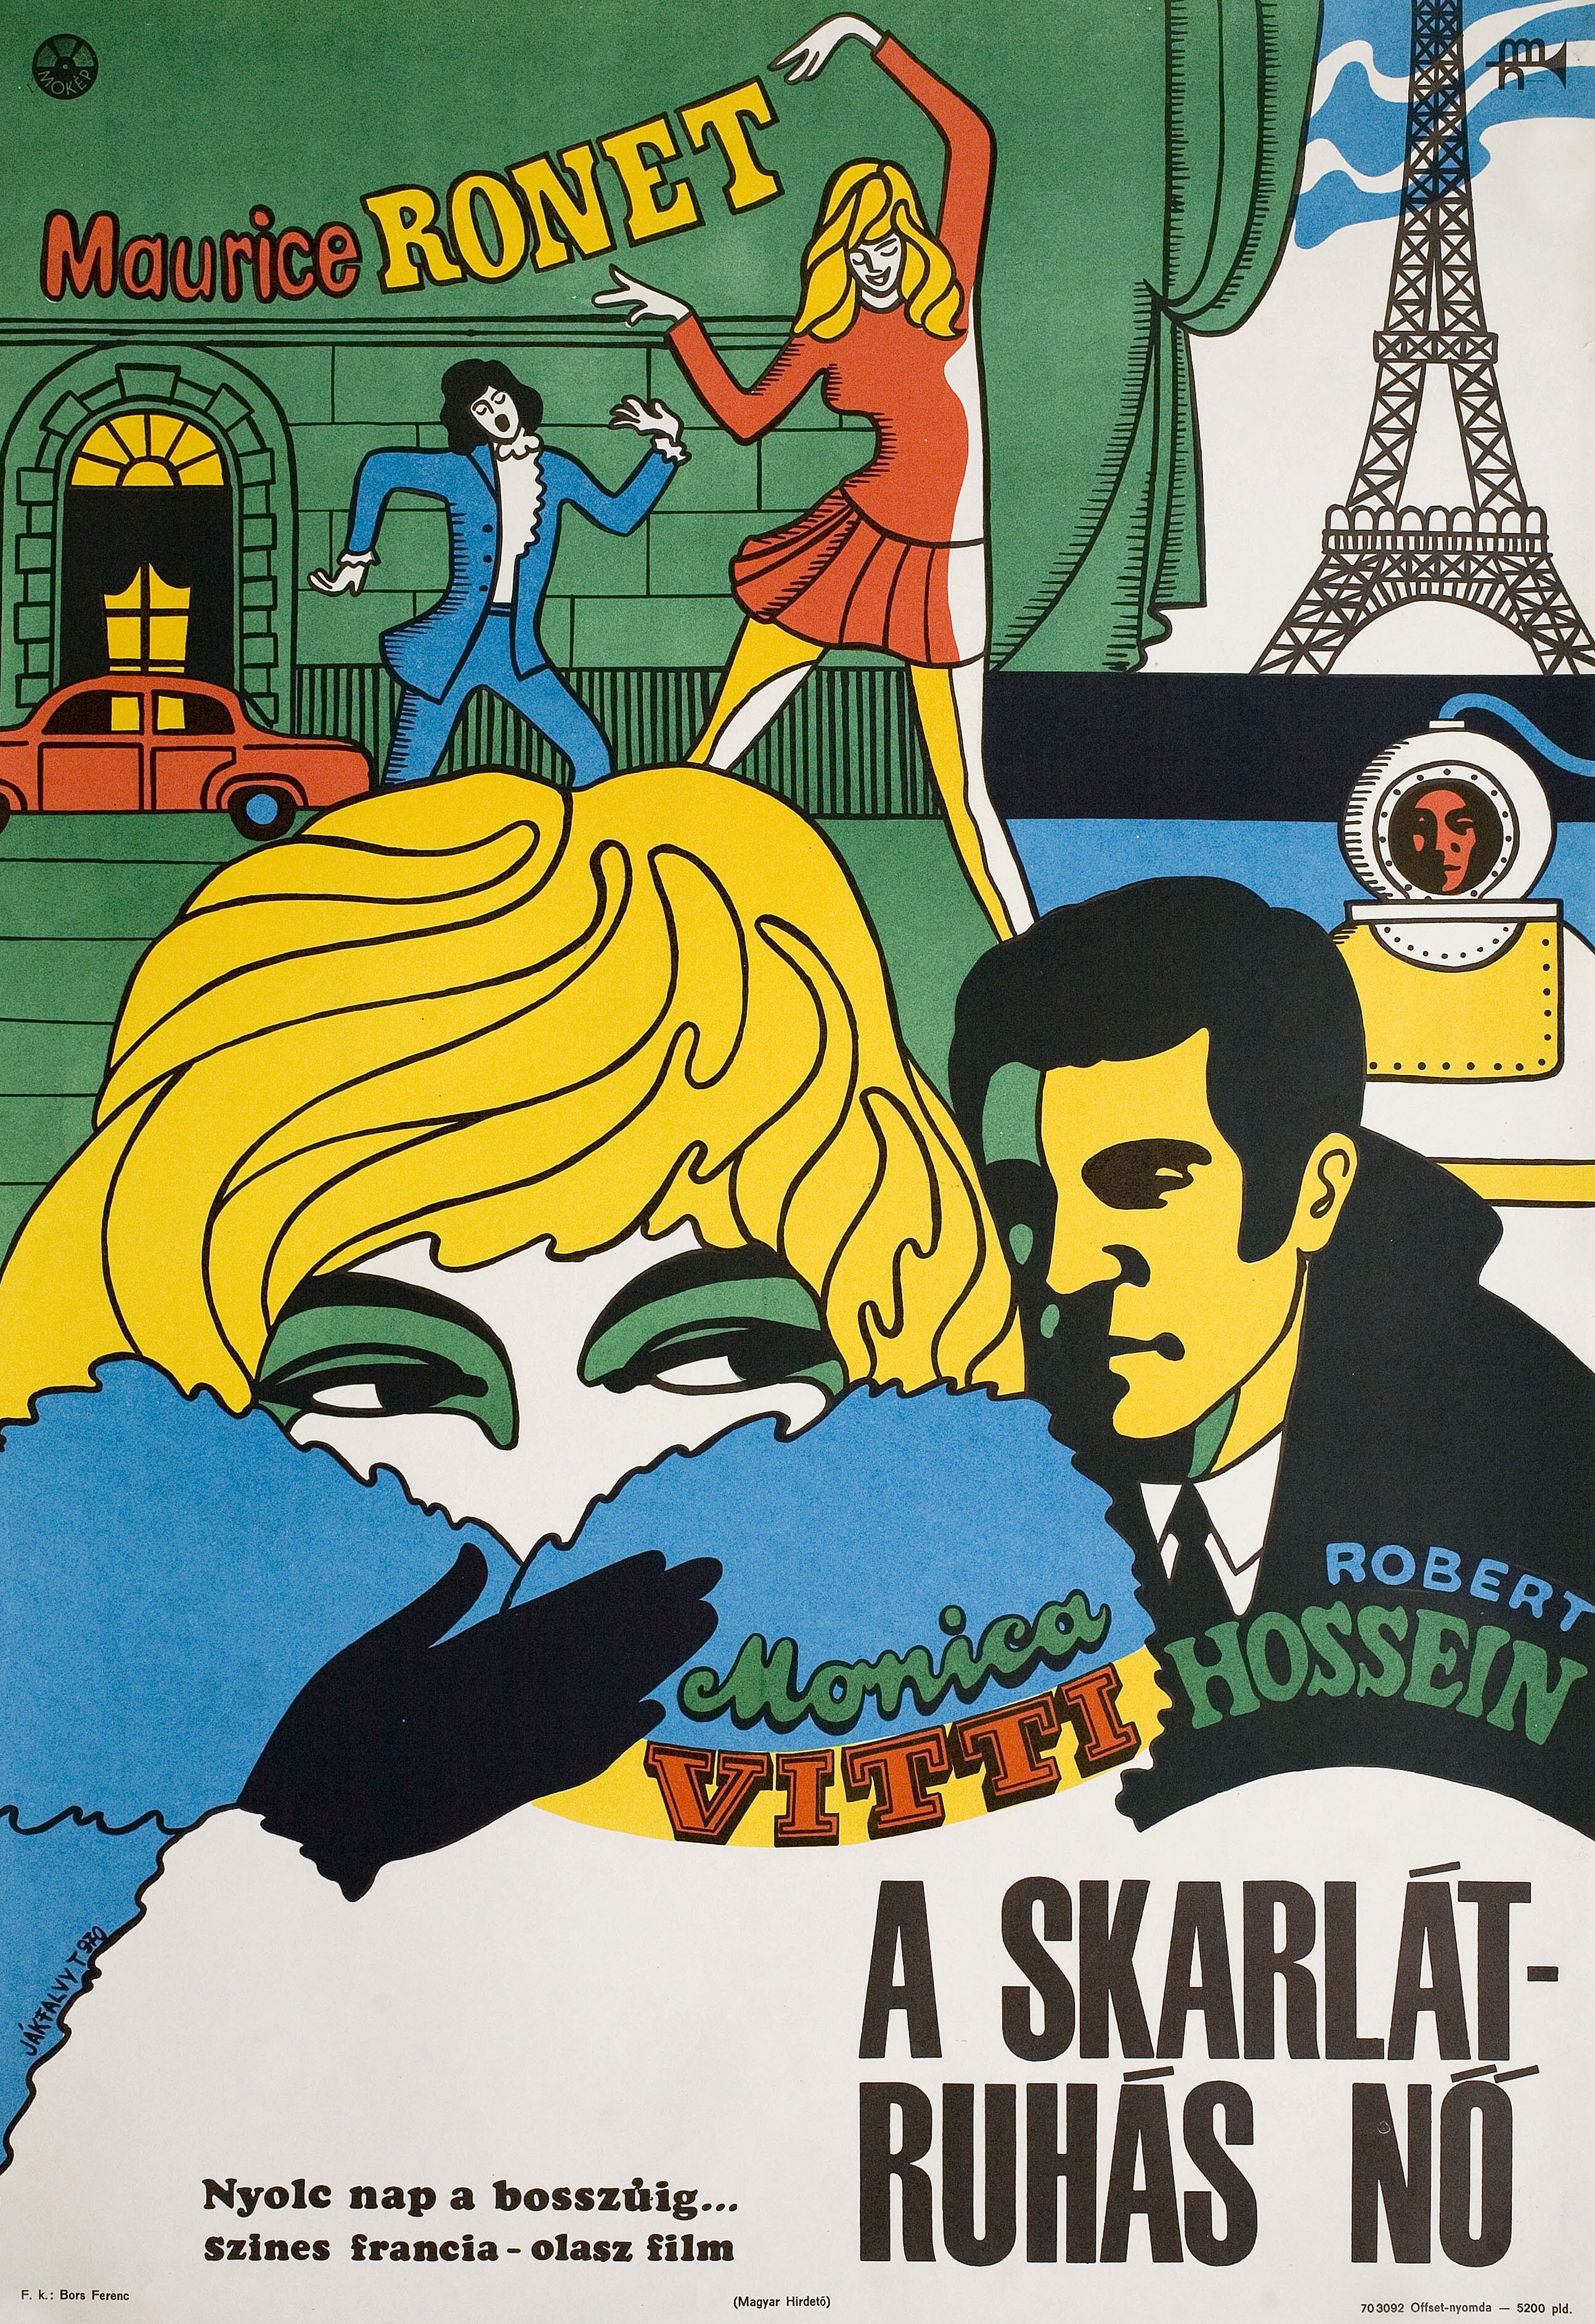 Алая леди (Scarlet Lady, 1969), режиссёр Жан Валер, иллюстрированный постер к фильму (Венгрия, 1970 год), автор Тибор Якфалви